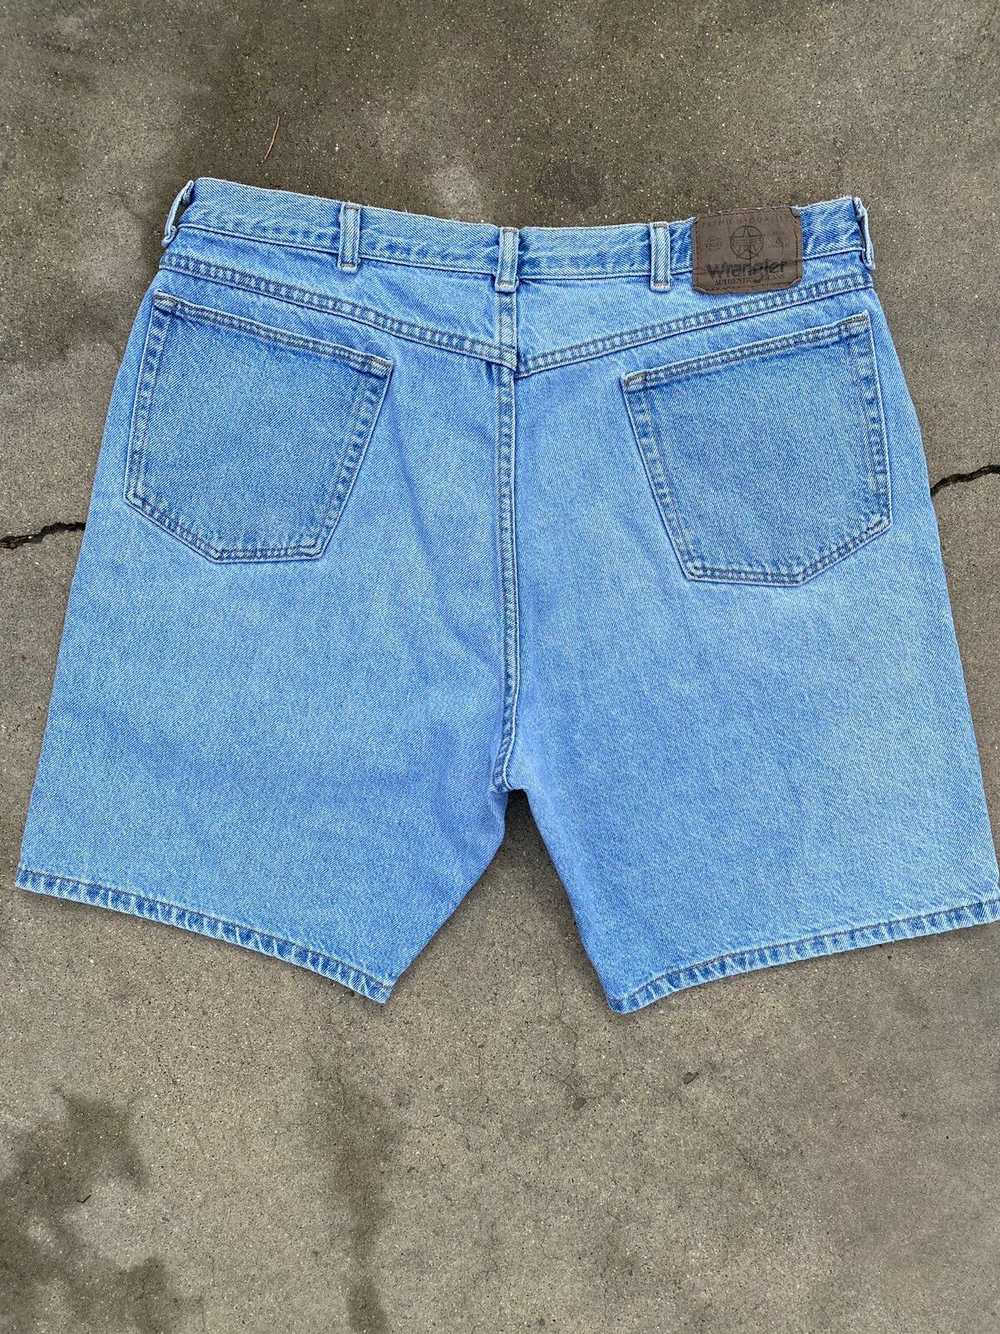 Vintage × Wrangler Vintage baggy wrangler shorts - image 4